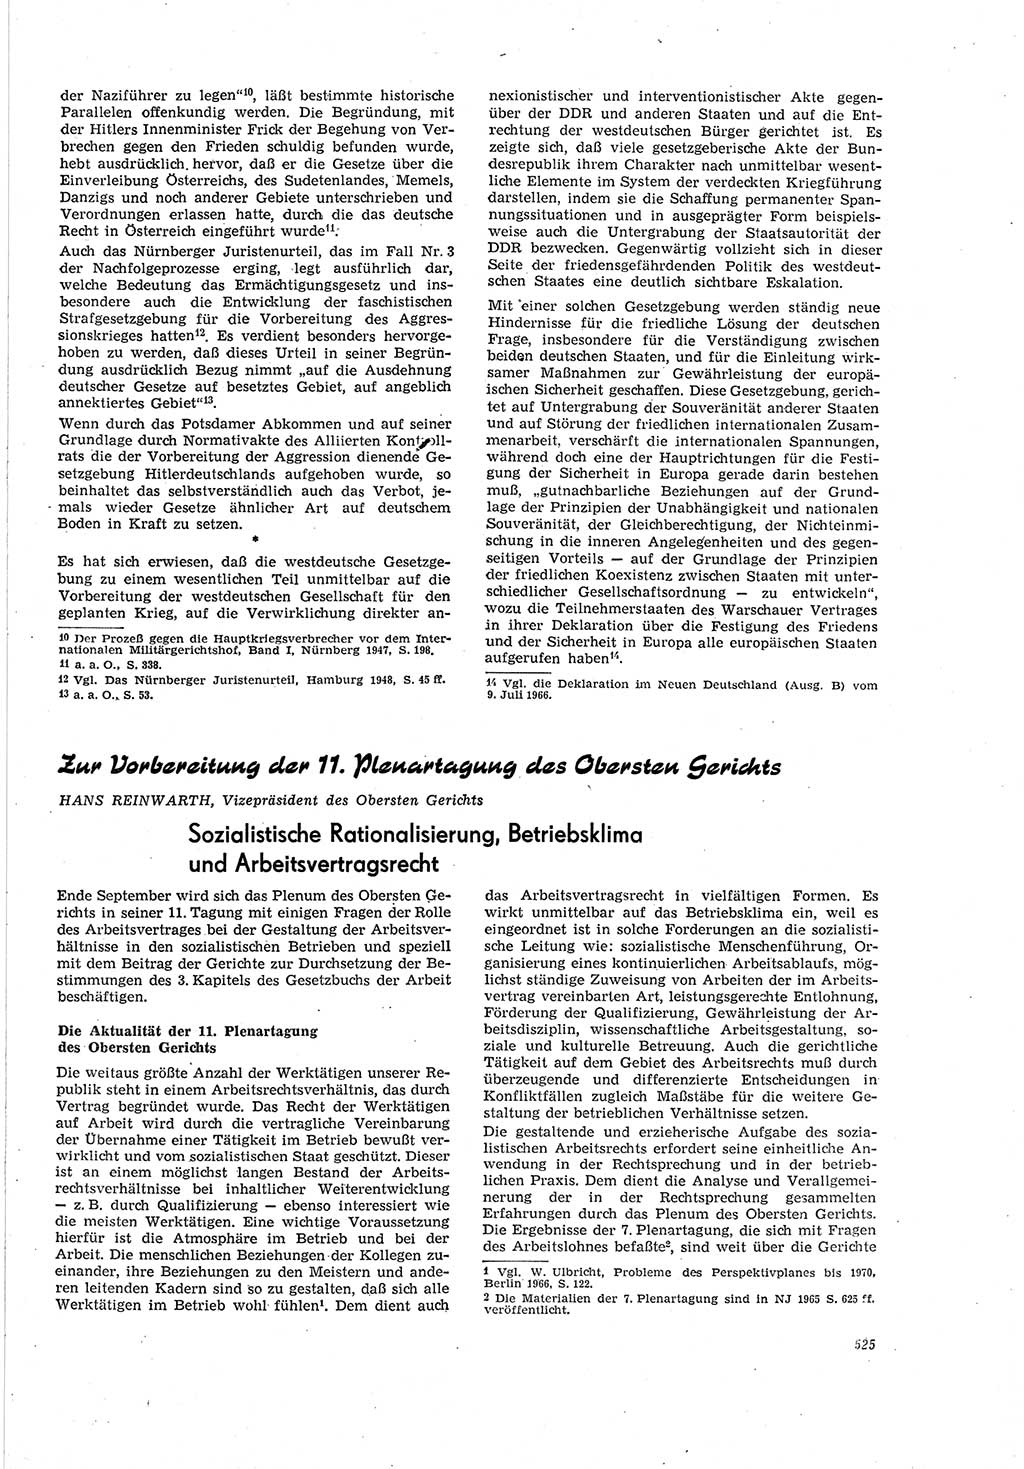 Neue Justiz (NJ), Zeitschrift für Recht und Rechtswissenschaft [Deutsche Demokratische Republik (DDR)], 20. Jahrgang 1966, Seite 525 (NJ DDR 1966, S. 525)